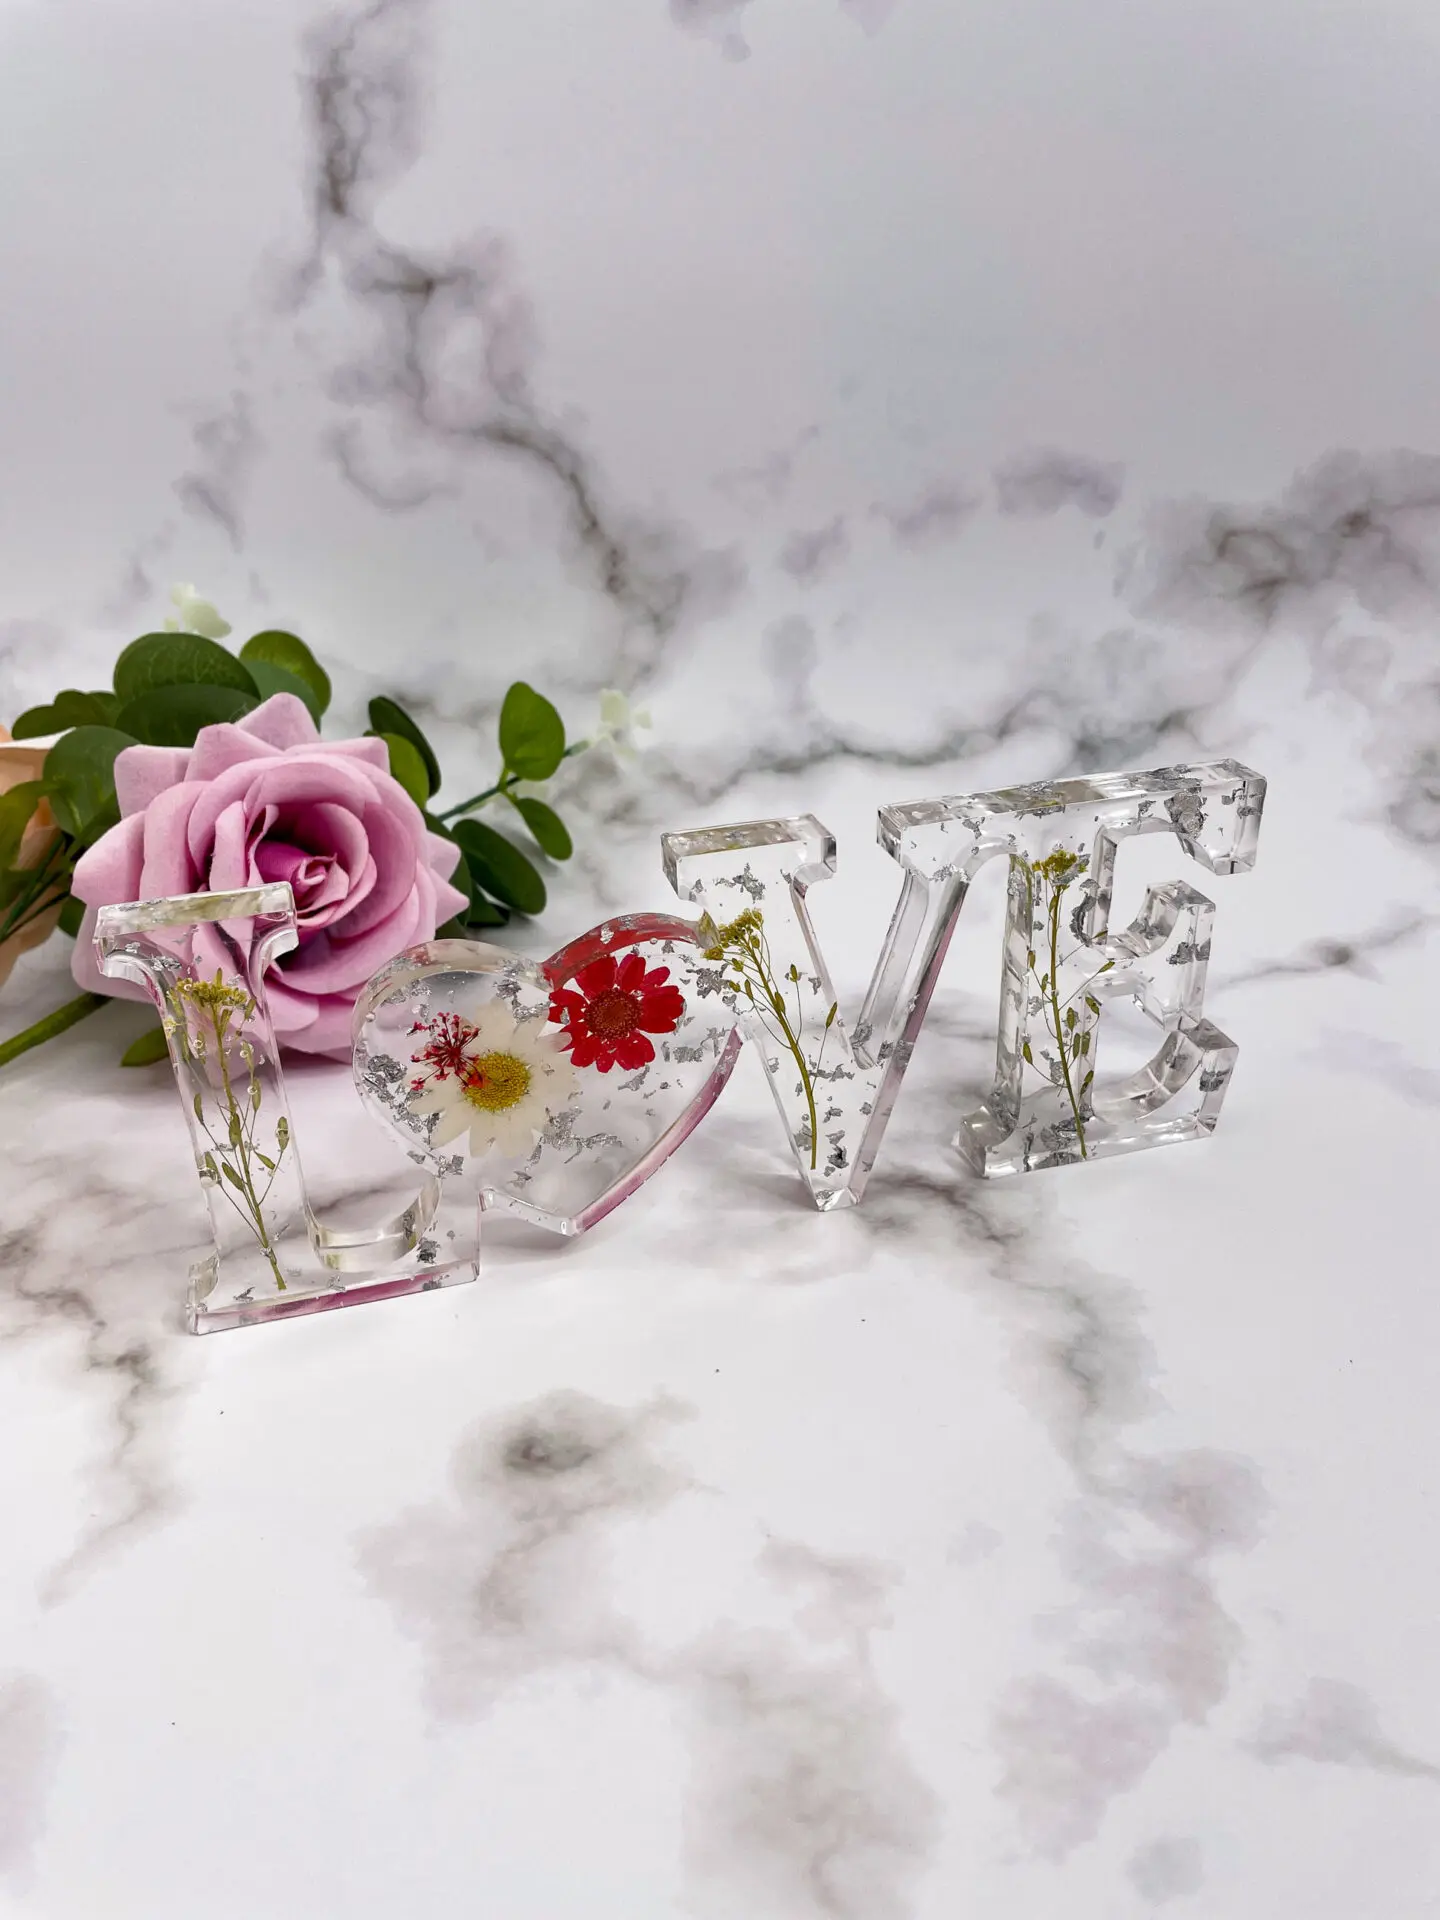 Mot décoratif en résine - LOVE - fleur rouge - idées cadeaux pour la saint valentin - boutique idées cadeaux - boutique en ligne - création française et artisanale.